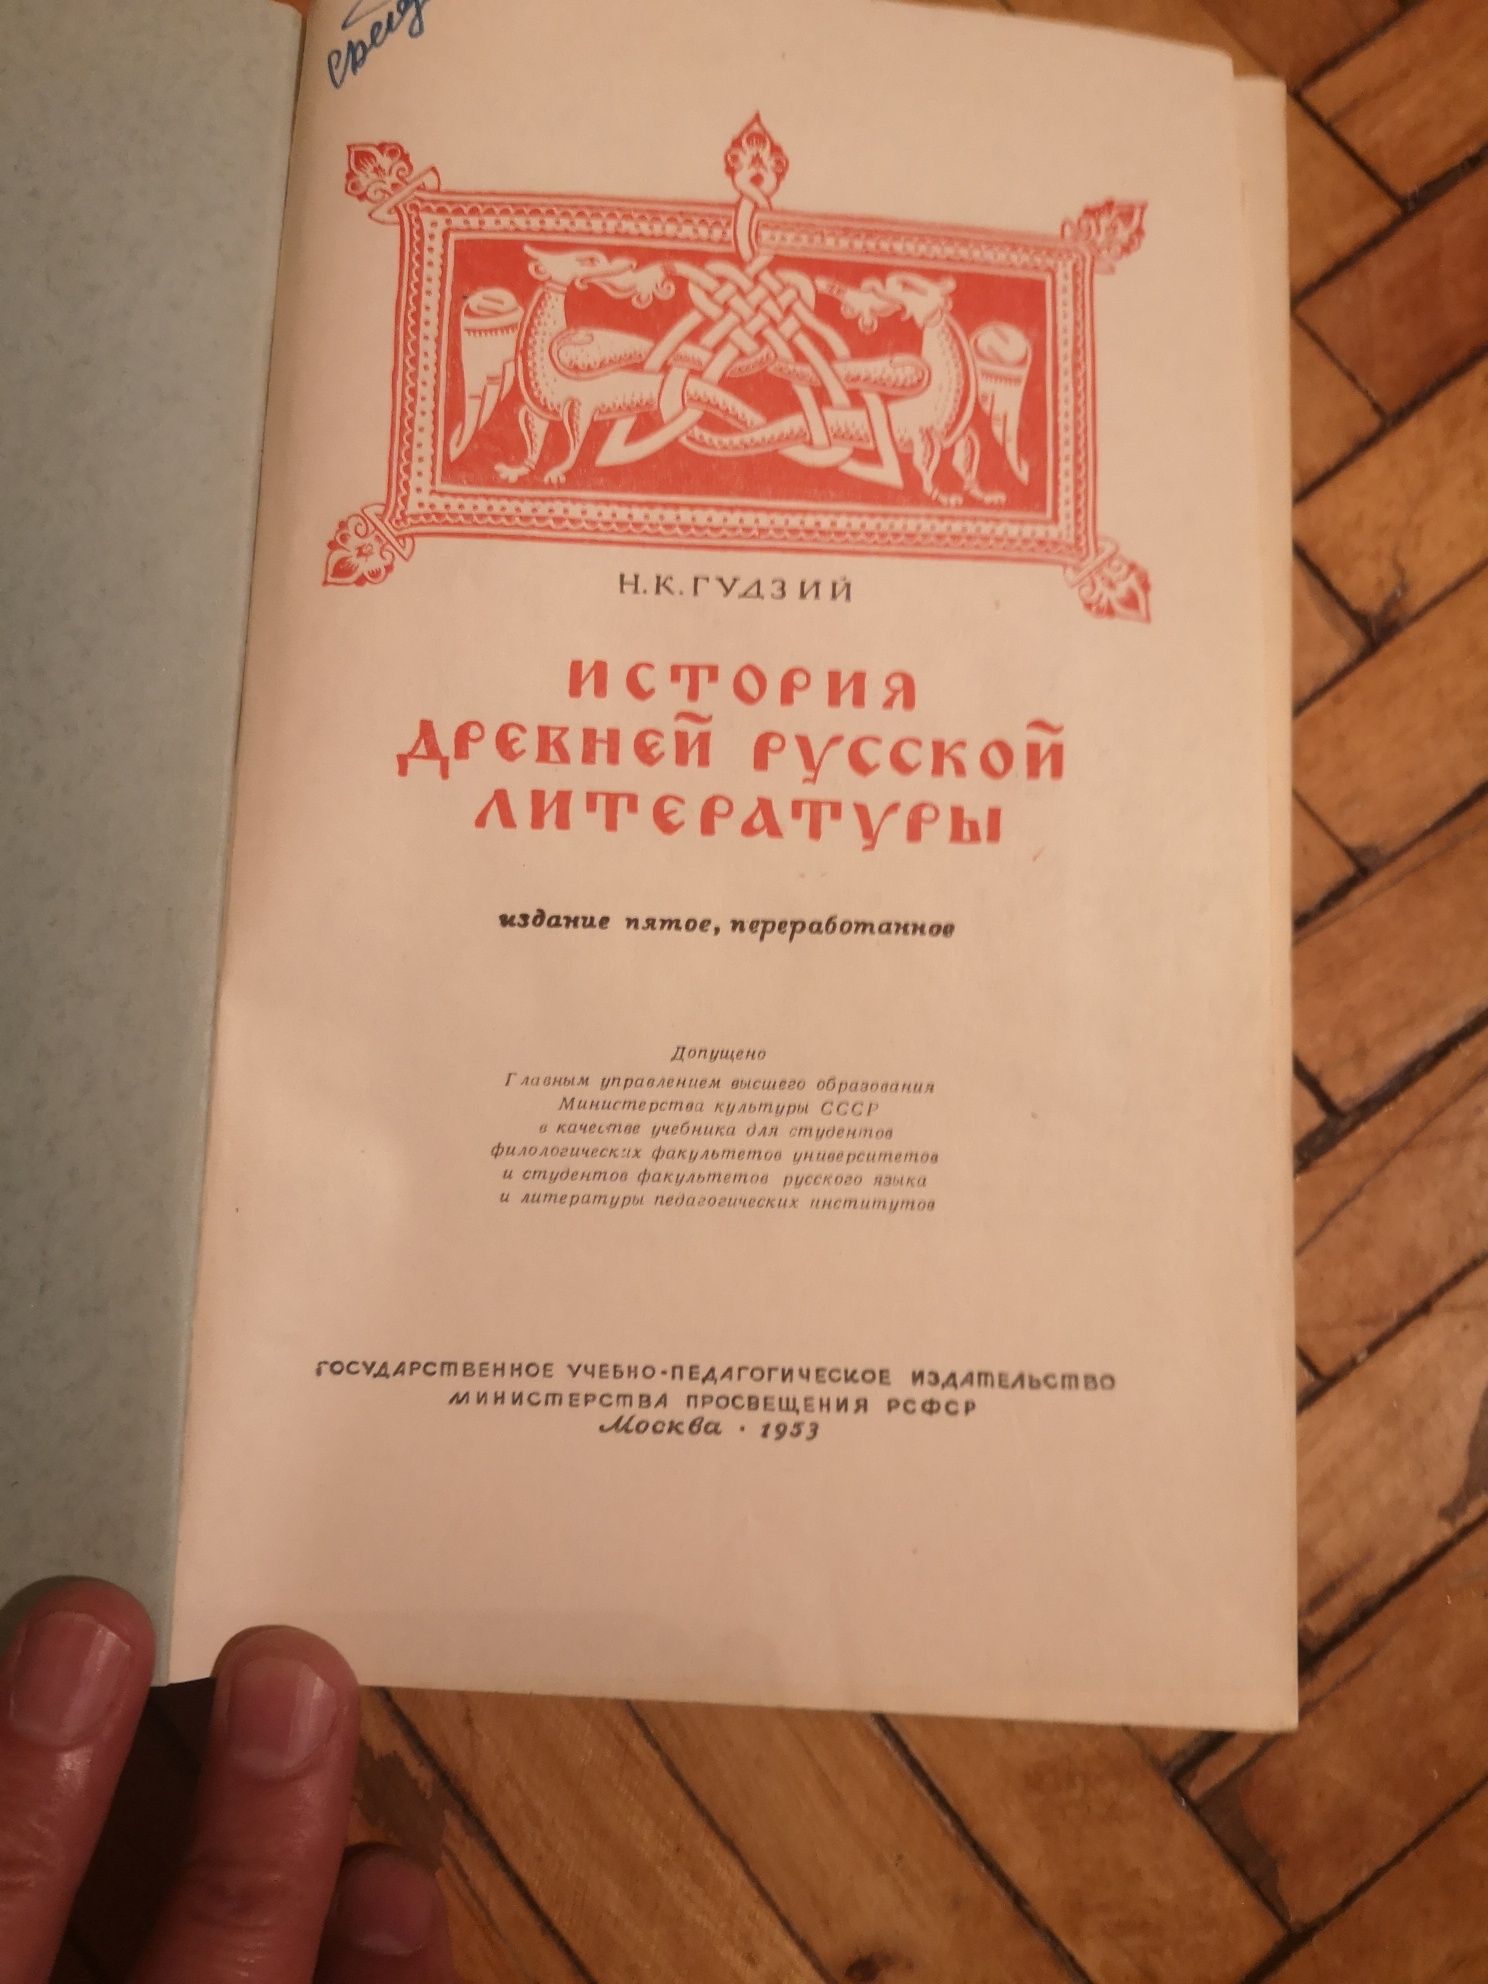 Древнерусская литература: оригиналы и критика